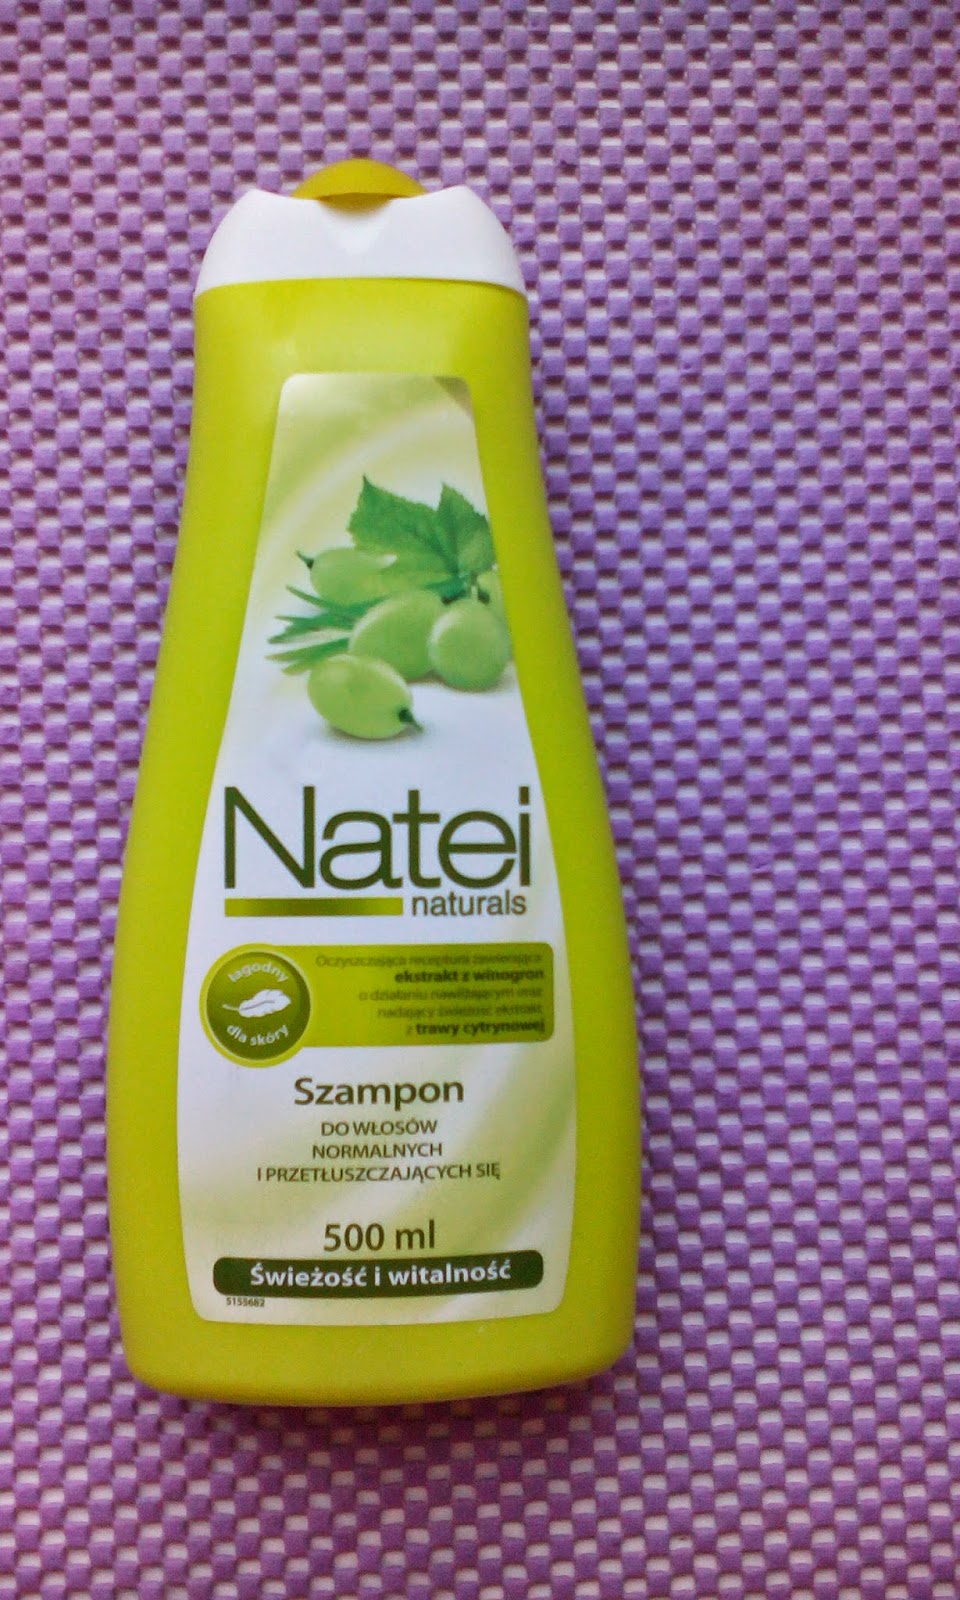 natei naturals szampon do włosów normalnych i przetłuszczających się